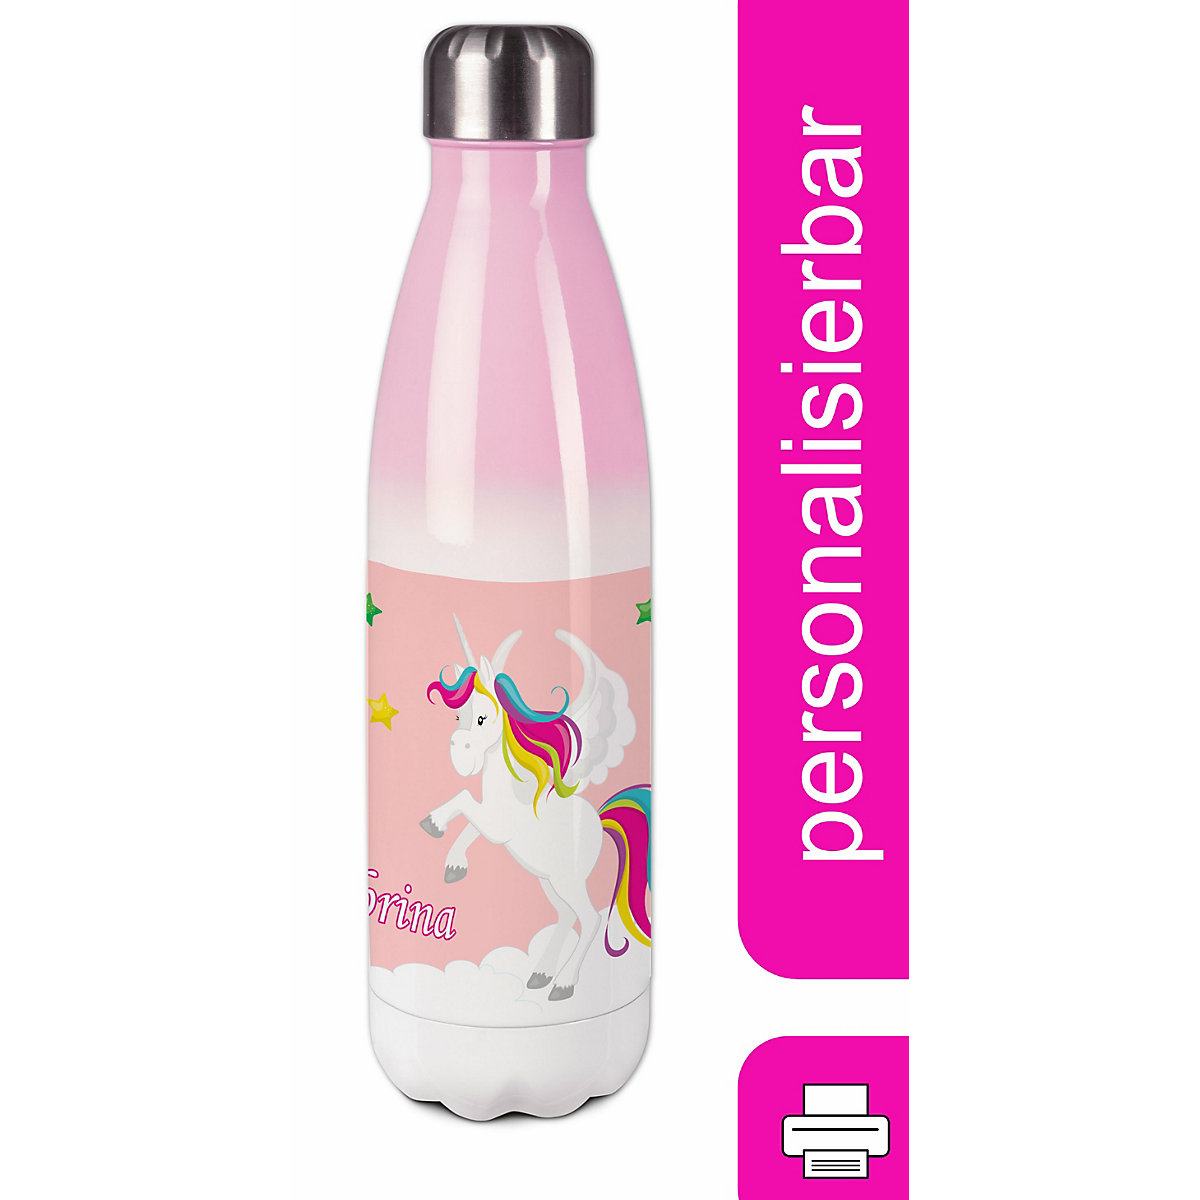 CreaDesign Edelstahl Kinder Thermoflasche / Trinkflasche bunt Pegasus Farbe rosa Spülmaschinenfest Auslaufsicher Bruchfest Doppelwandig Für Heißgetränke geeignet Mit Deckel Isoliert